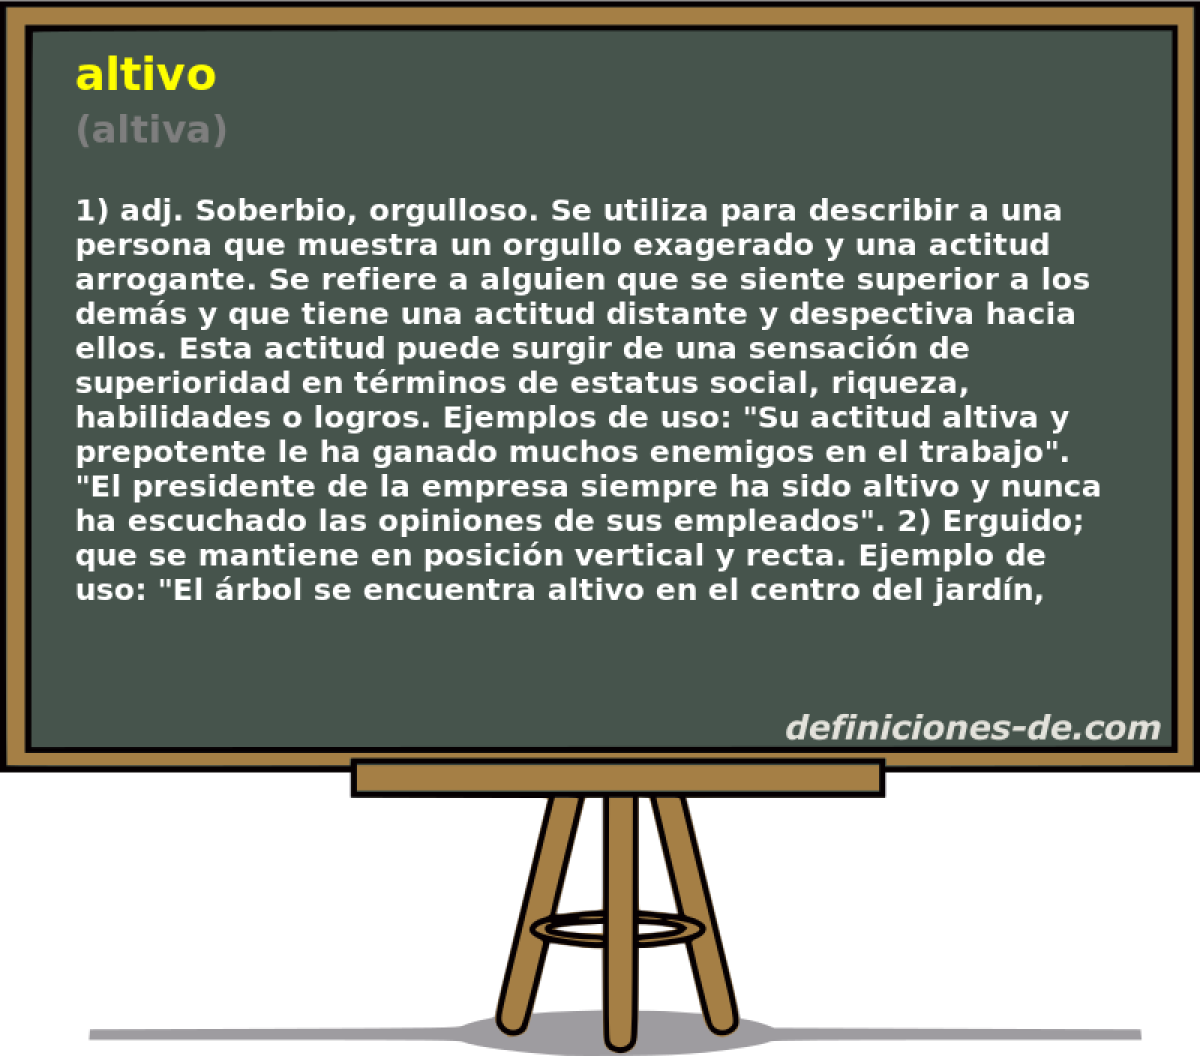 altivo (altiva)